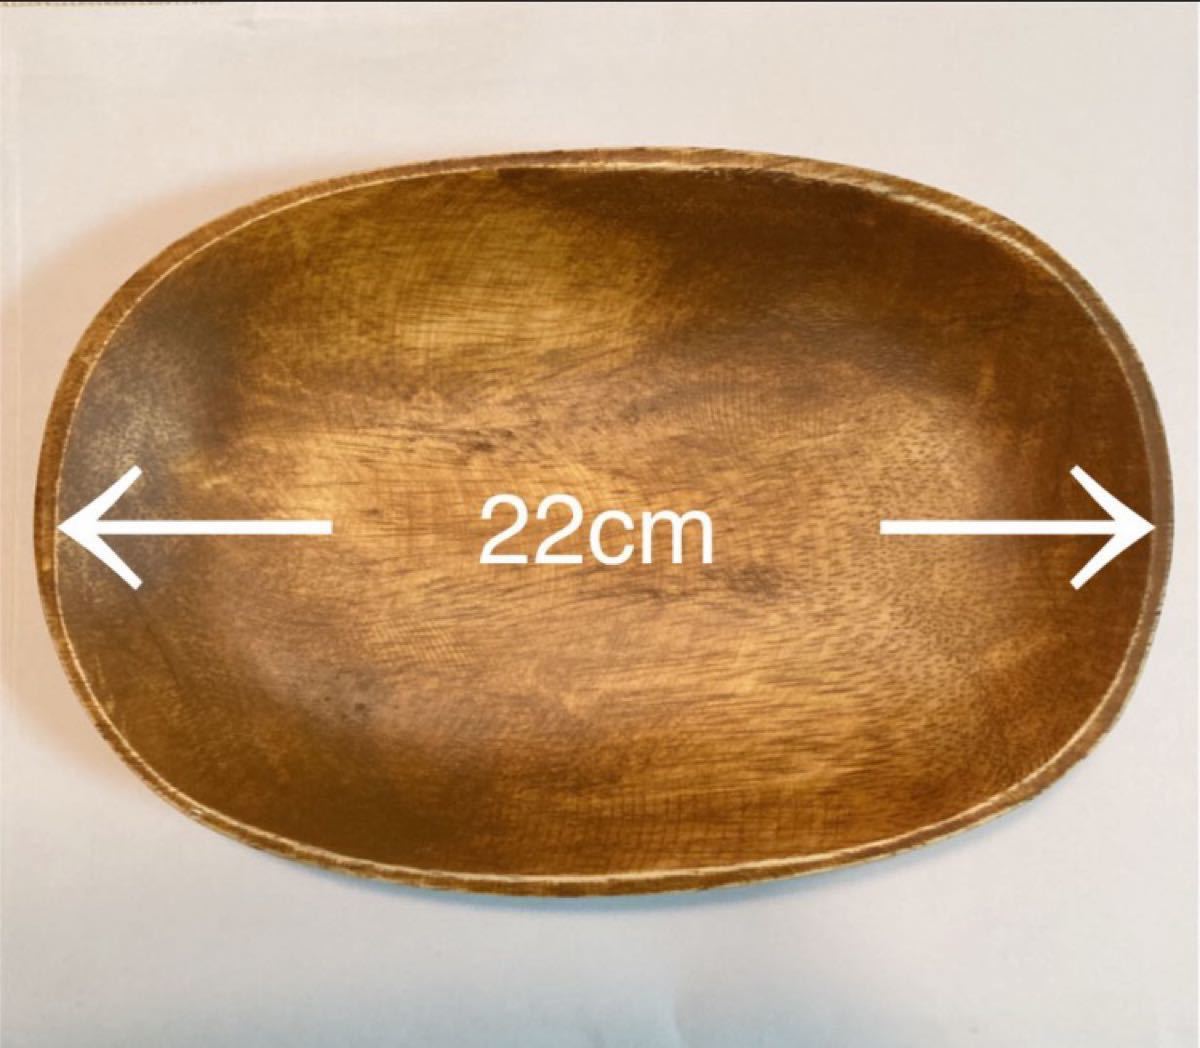 アカシア 楕円形プレート22cm×2枚セット 新品 ワンプレート 木製トレー 木のトレー 木のお皿 木製食器